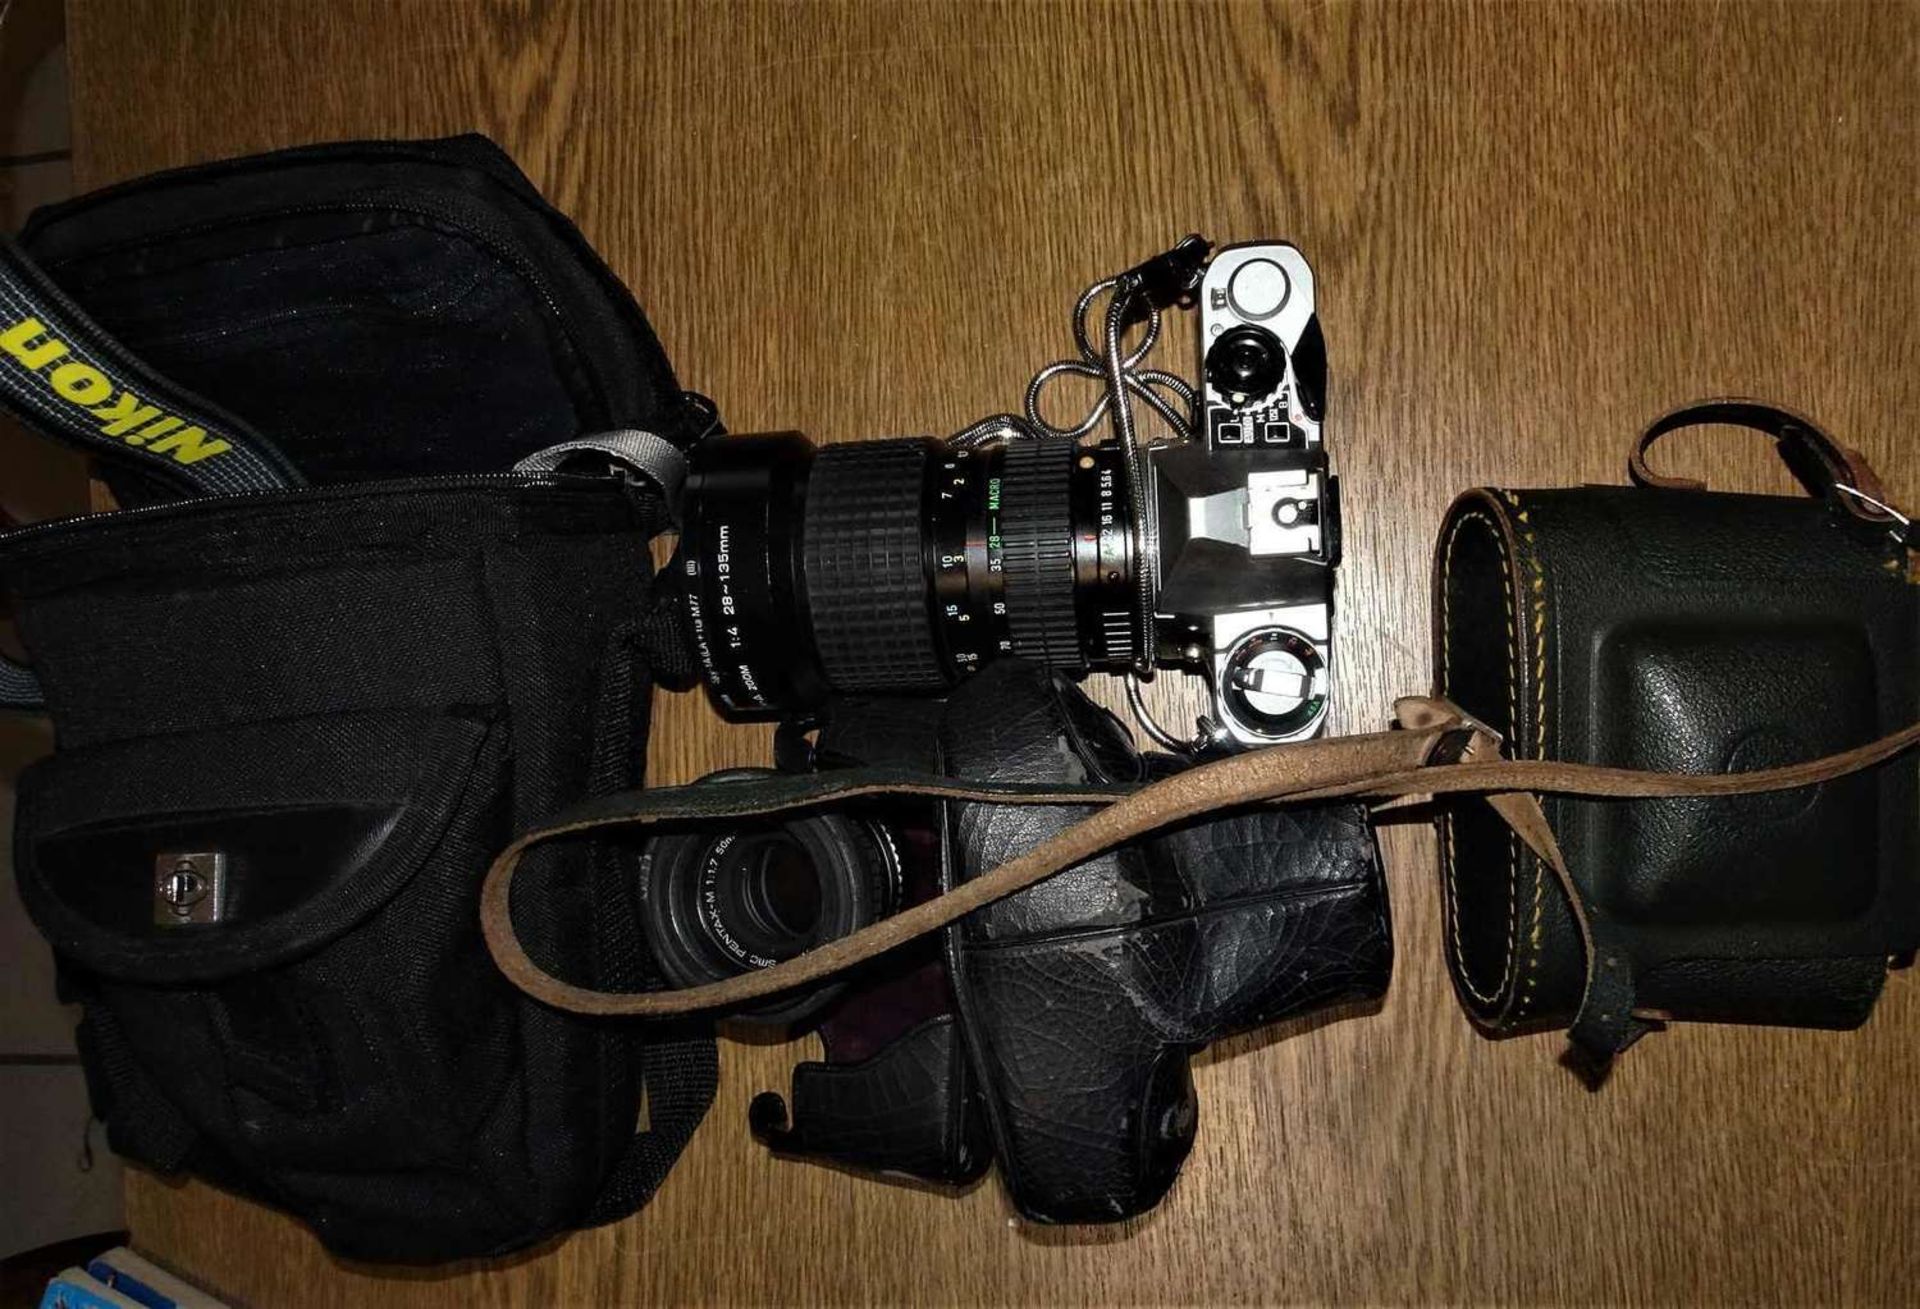 1 Lot Kamera und Objektive, dabei eine Pentax mit großem Objektiv 28/135 mm, sowie eine Plastikkam